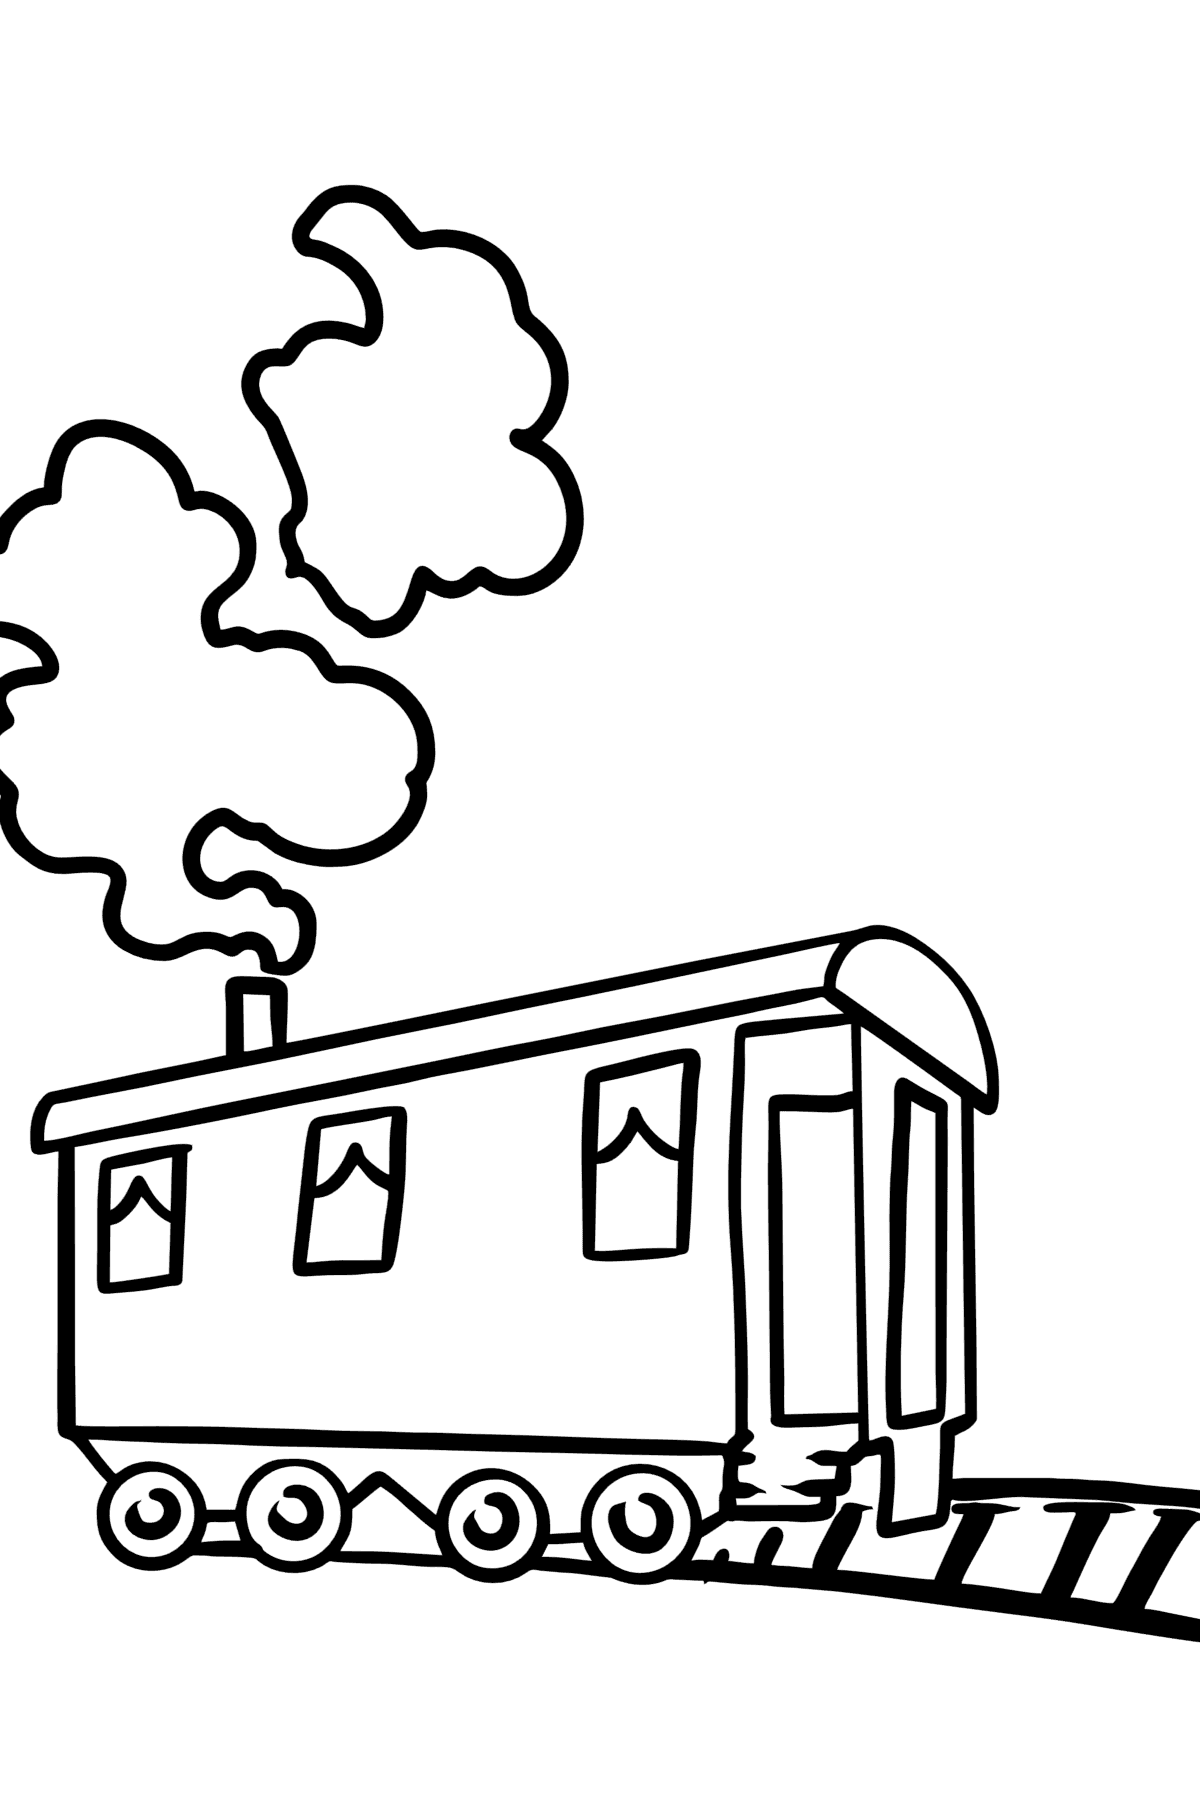 Tegning til fargelegging togvogn - Tegninger til fargelegging for barn